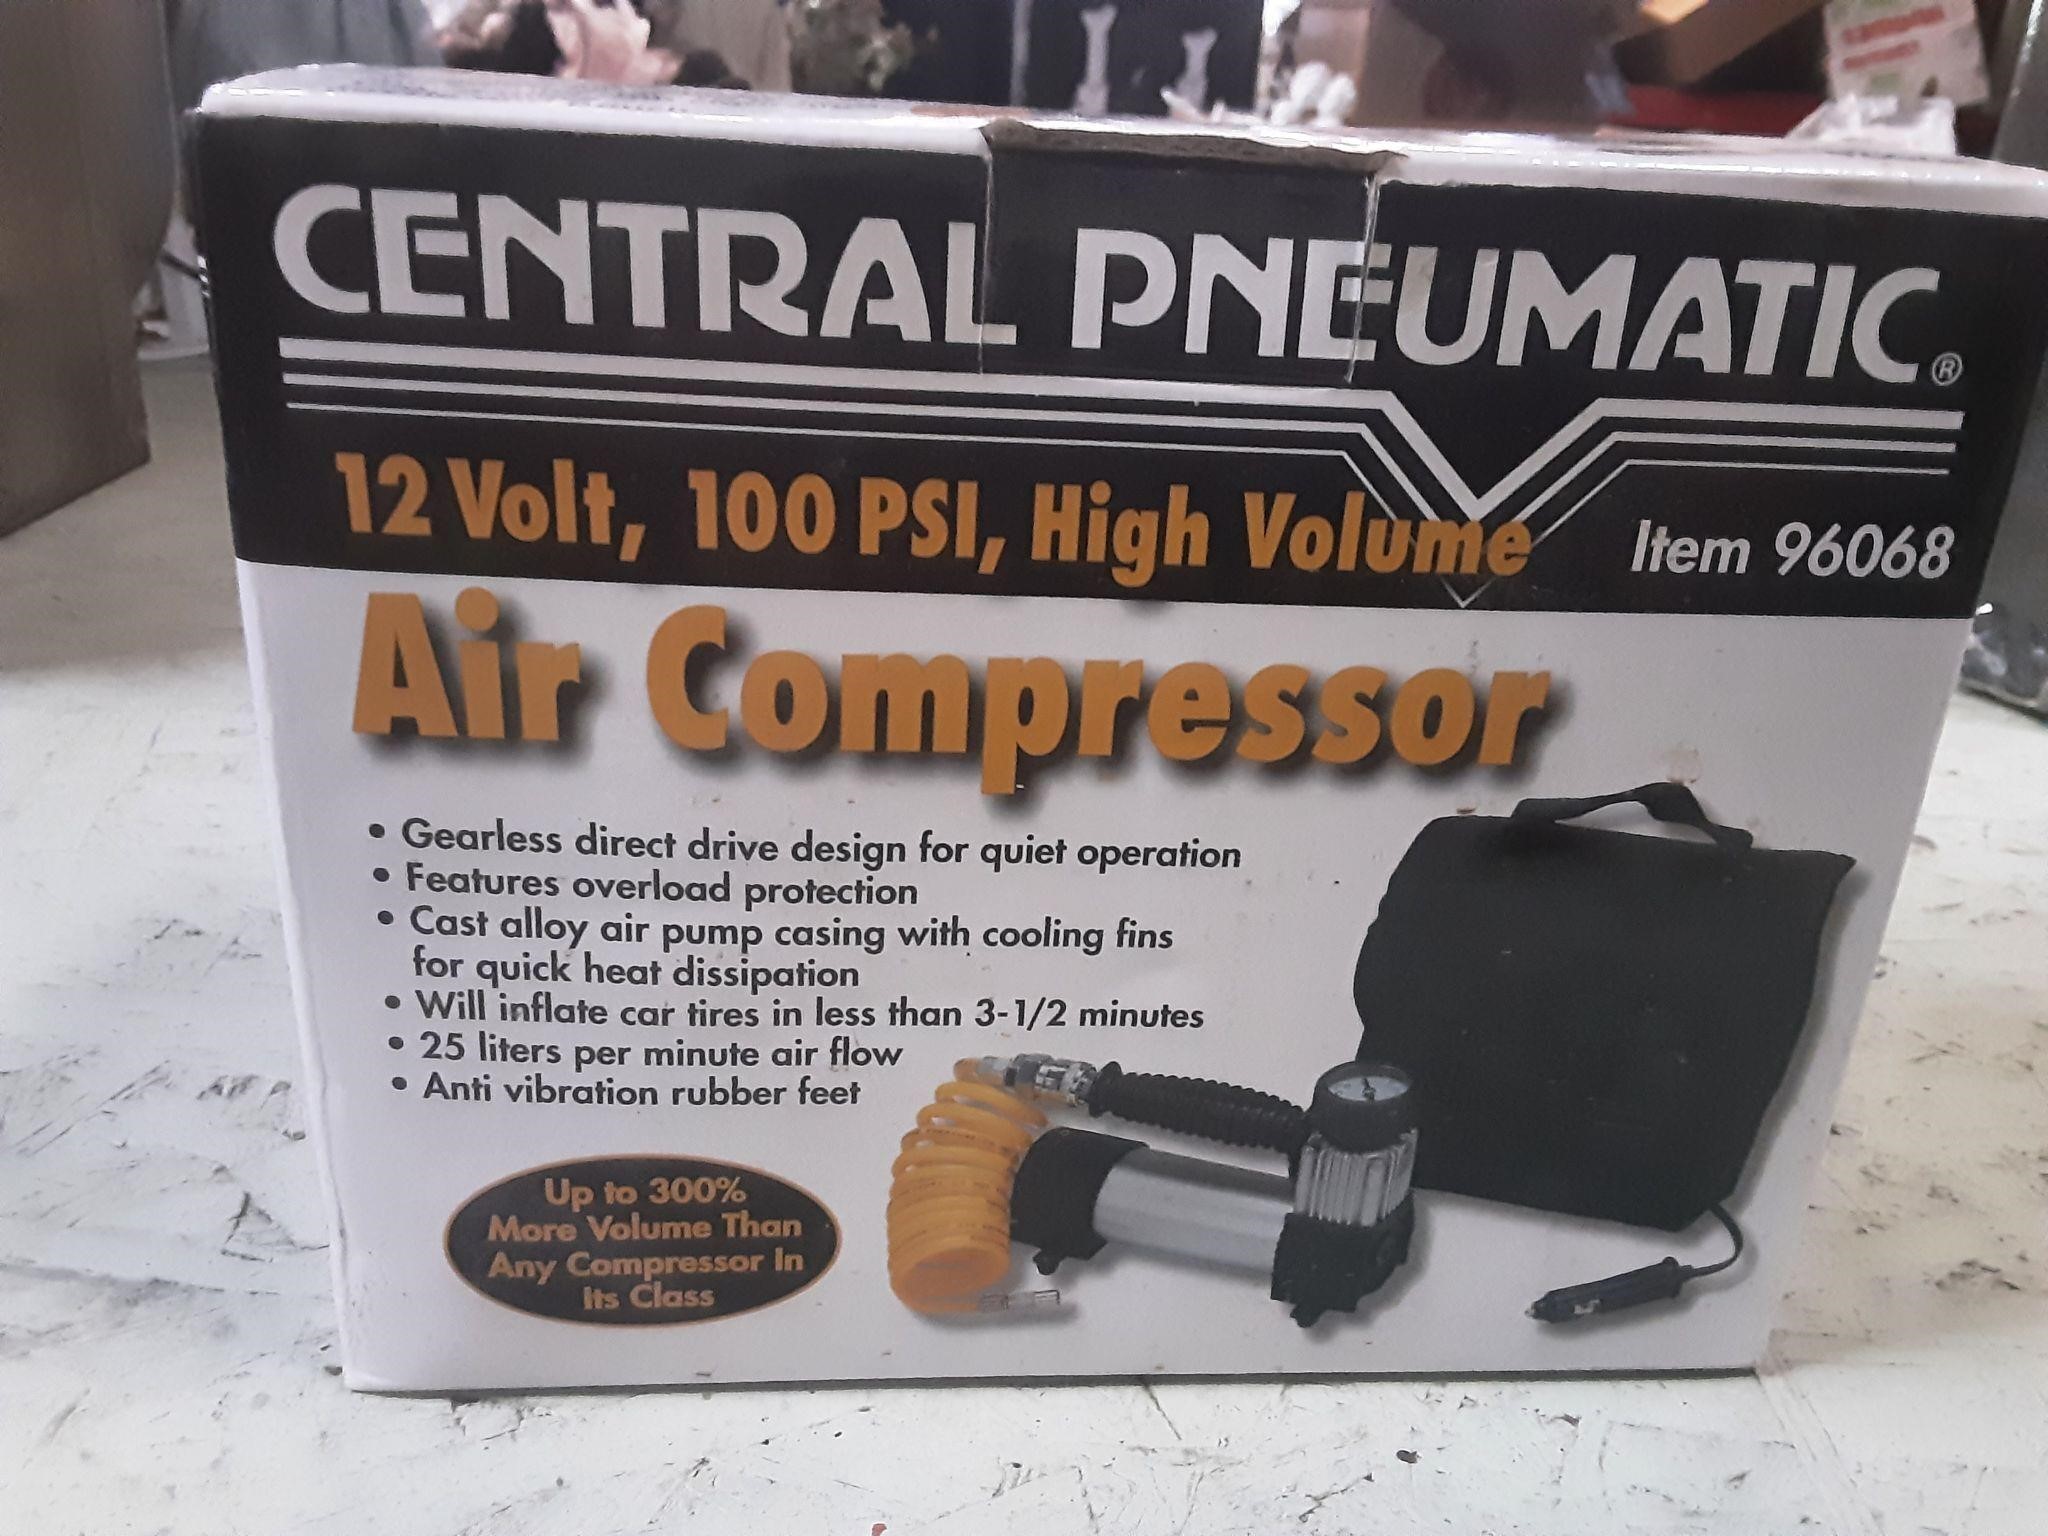 New air compressor in box